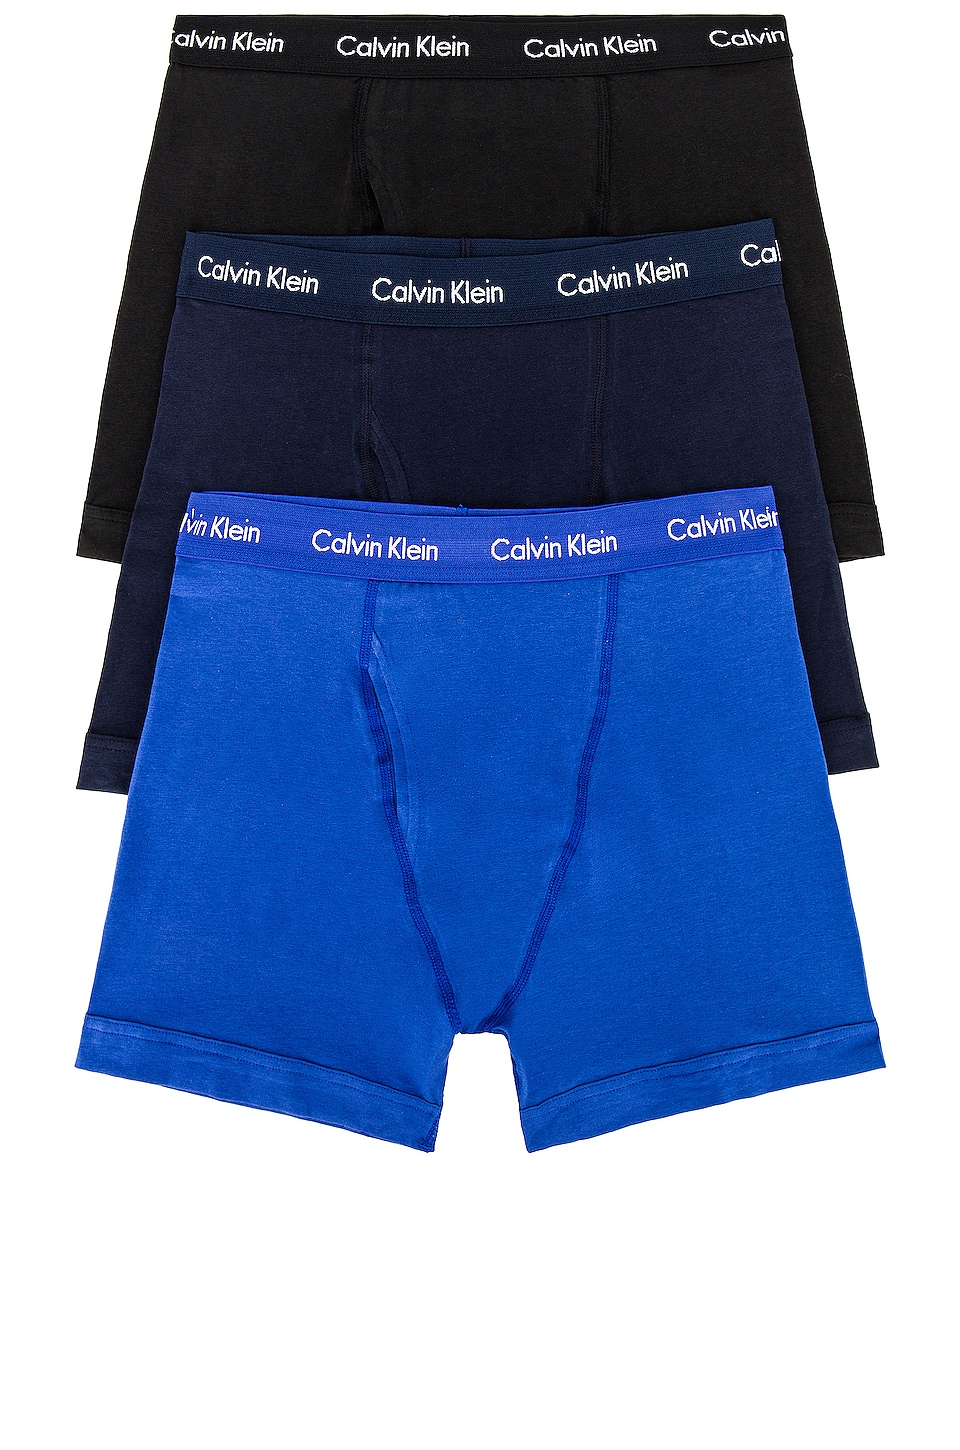 Profeet hartstochtelijk zweep Calvin Klein Underwear Calvin Klein Boxer Brief 3 Piece Set in Black, Blue  Shadow, & Cobalt Water | REVOLVE